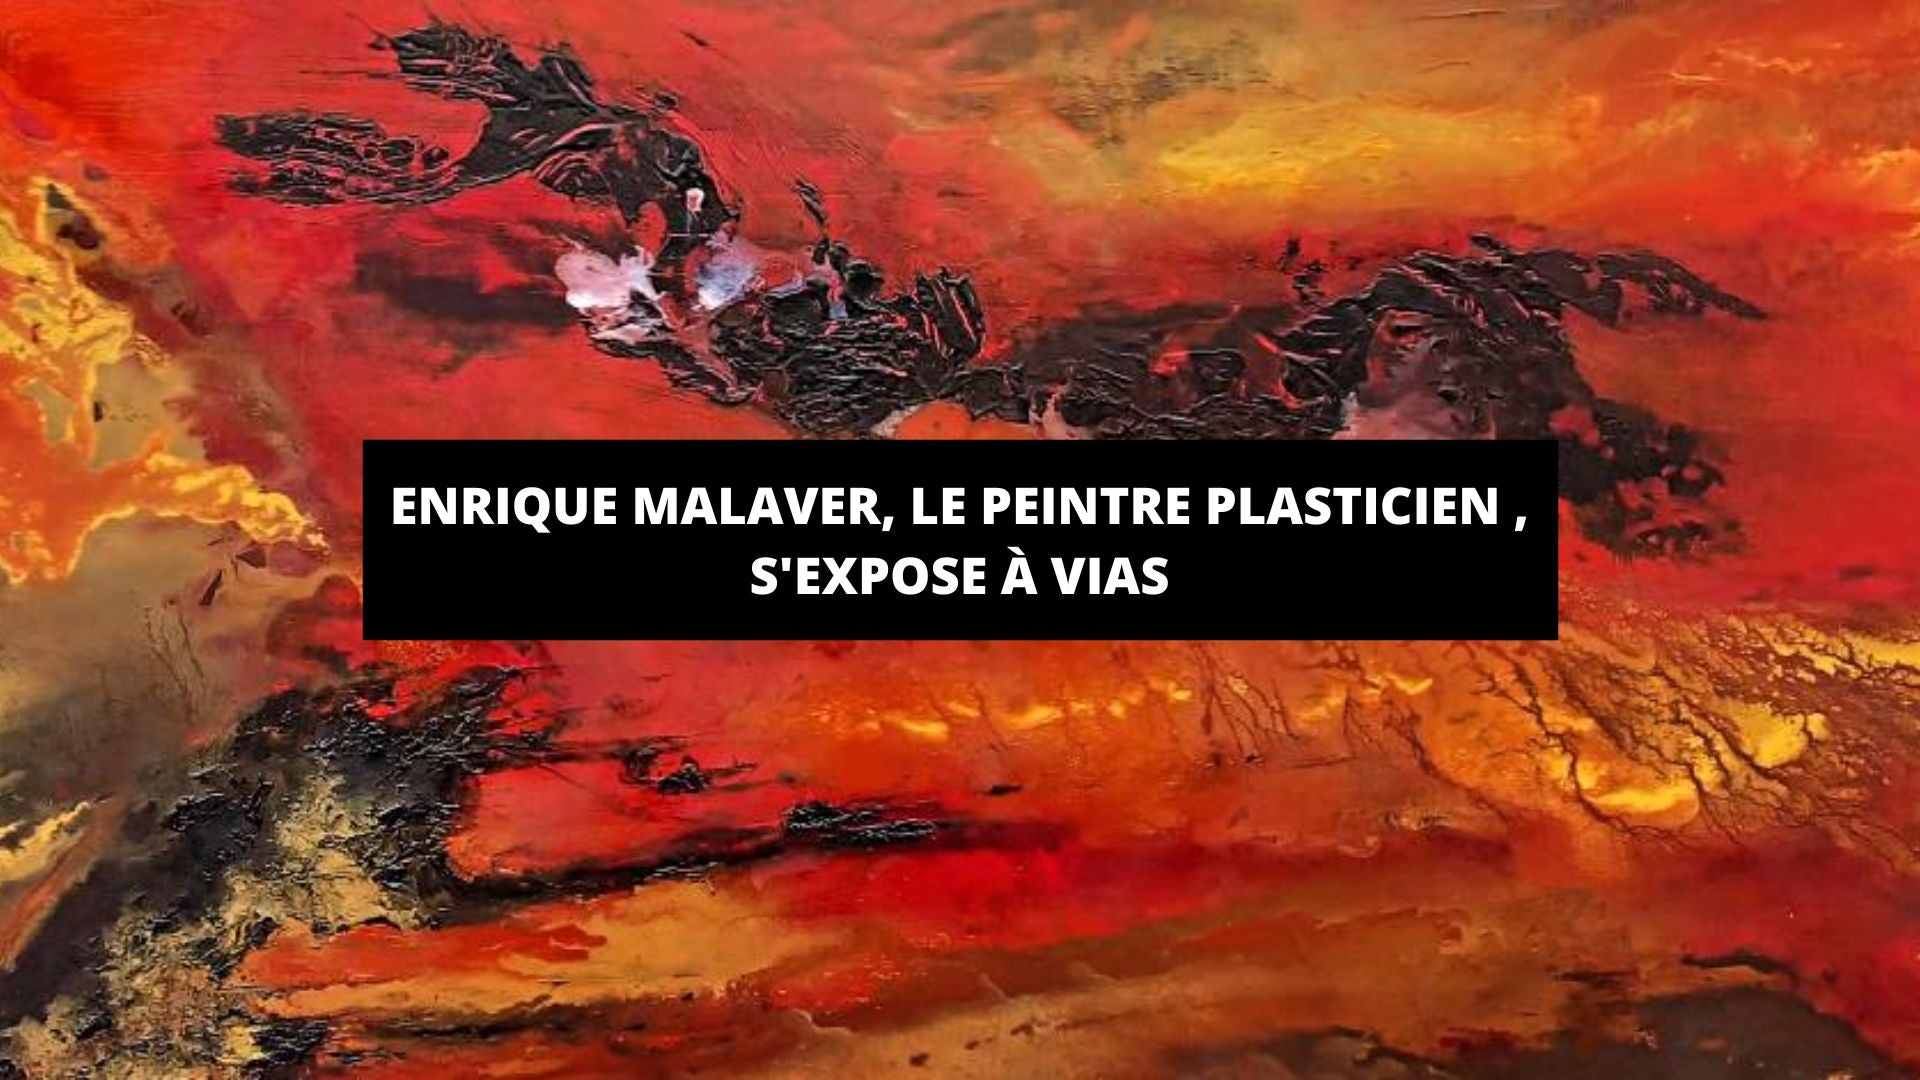 Enrique Malaver, le peintre plasticien autodidacte, s'expose à la galerie André-Malraux de Vias - The Art Avenue